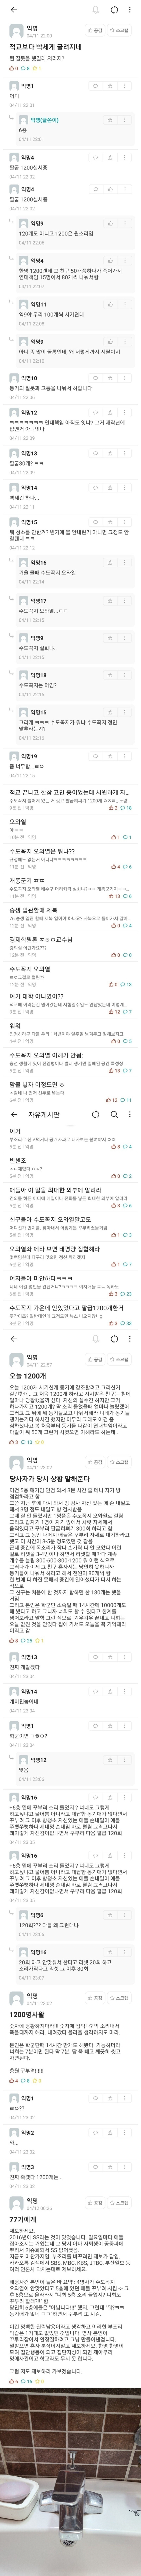 똥군기 논란 터진 한국 해양대 - 꾸르